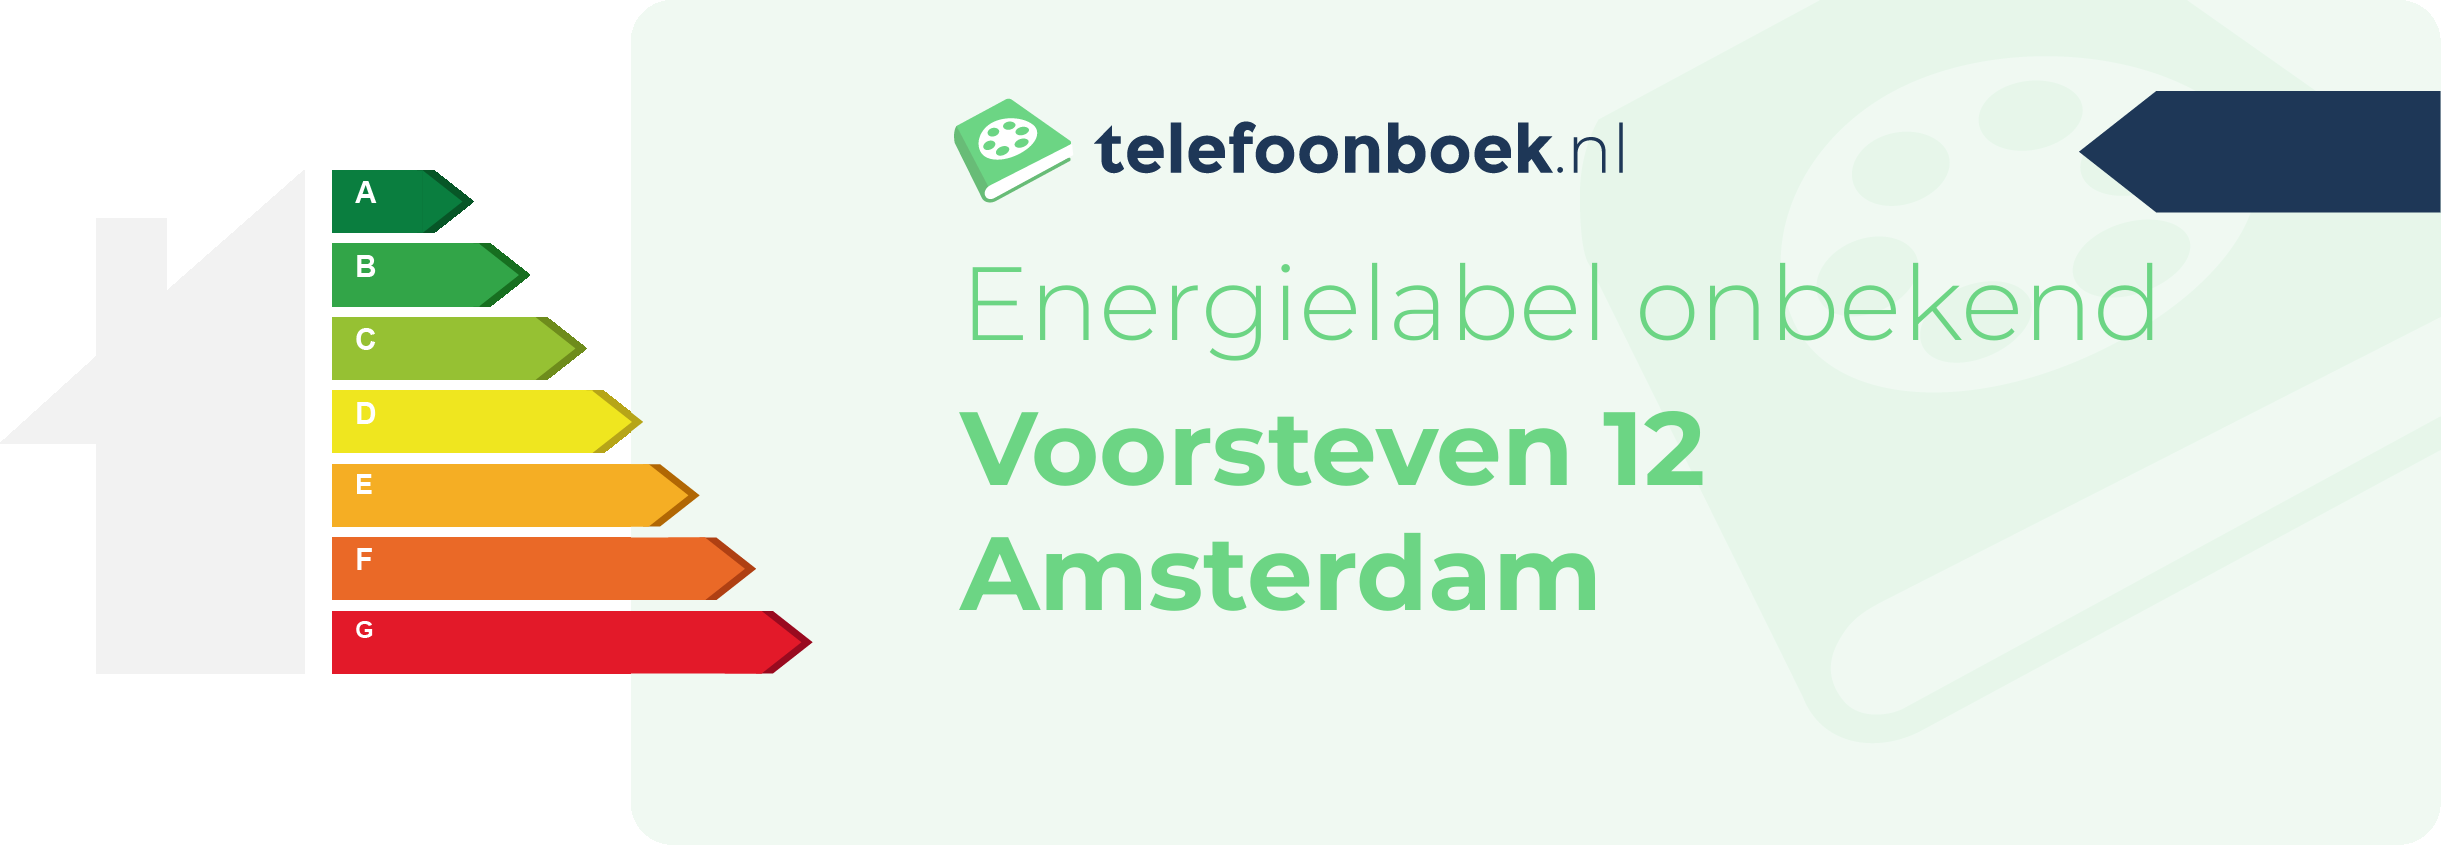 Energielabel Voorsteven 12 Amsterdam